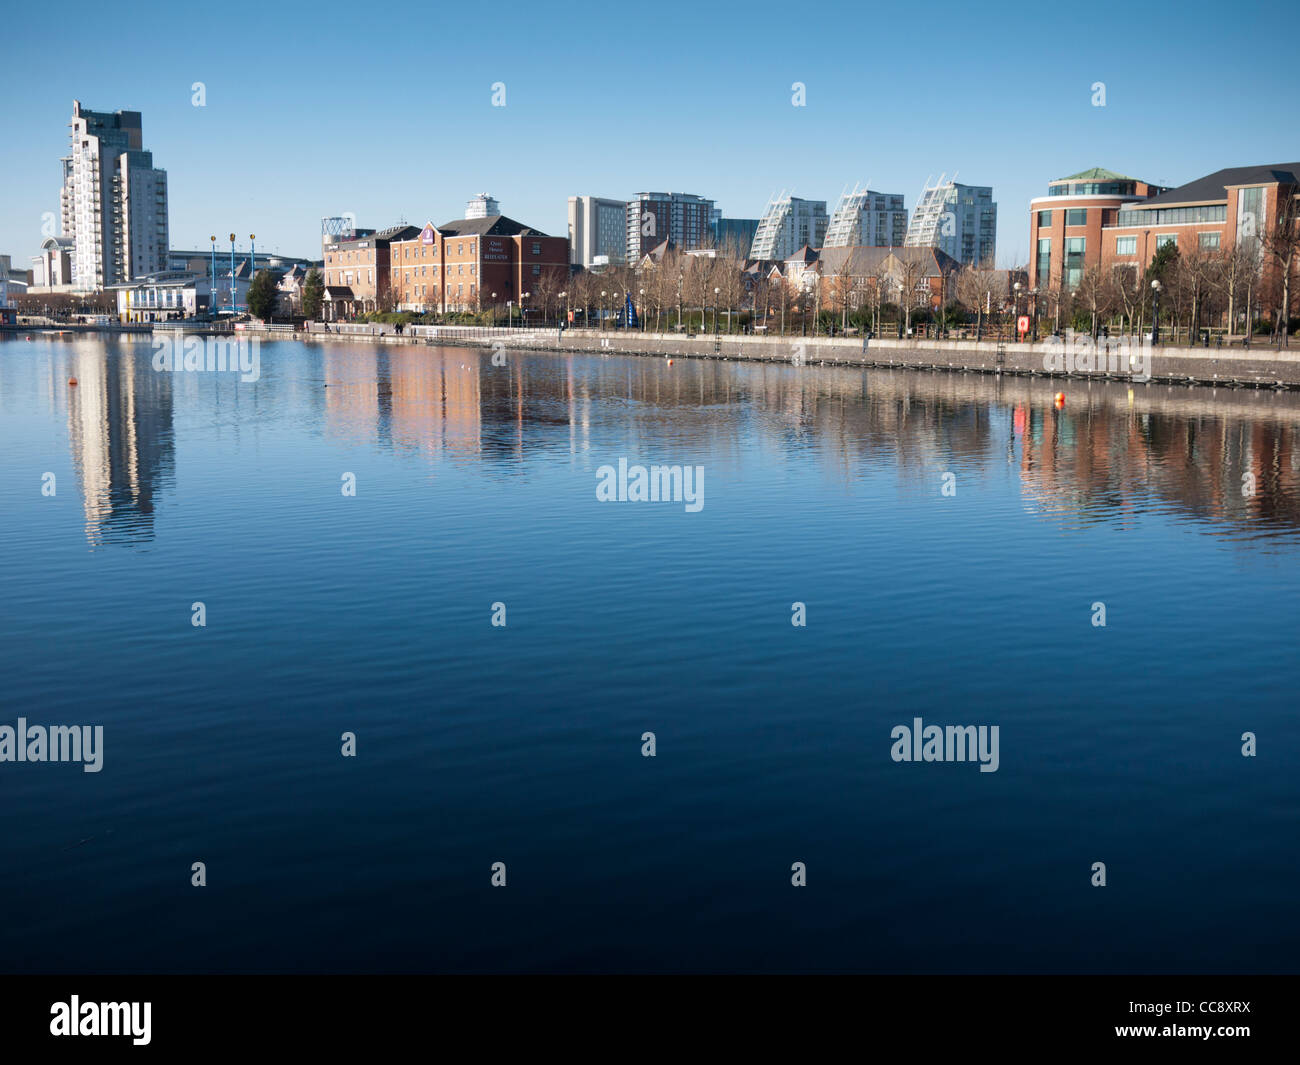 Salford Quays Manchester Inghilterra England Regno Unito. Vedute di edifici moderni su acqua in una limpida giornata di sole Foto Stock